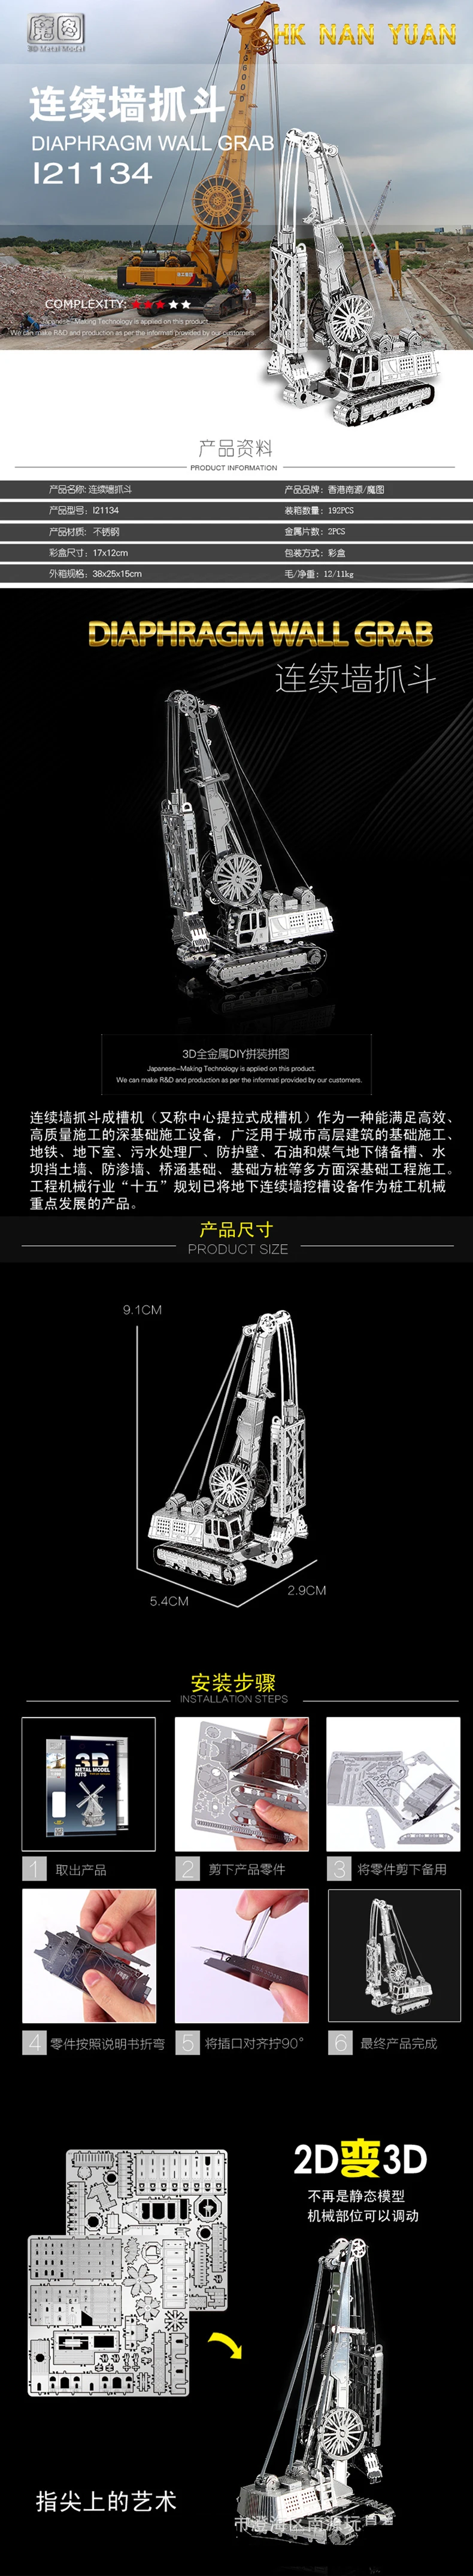 3 шт. набор HK Nan yuan 3D металлическая головоломка самосброс грузовик цементный миксер мембранный настенный захват DIY лазерная резка Пазлы Модель игрушки